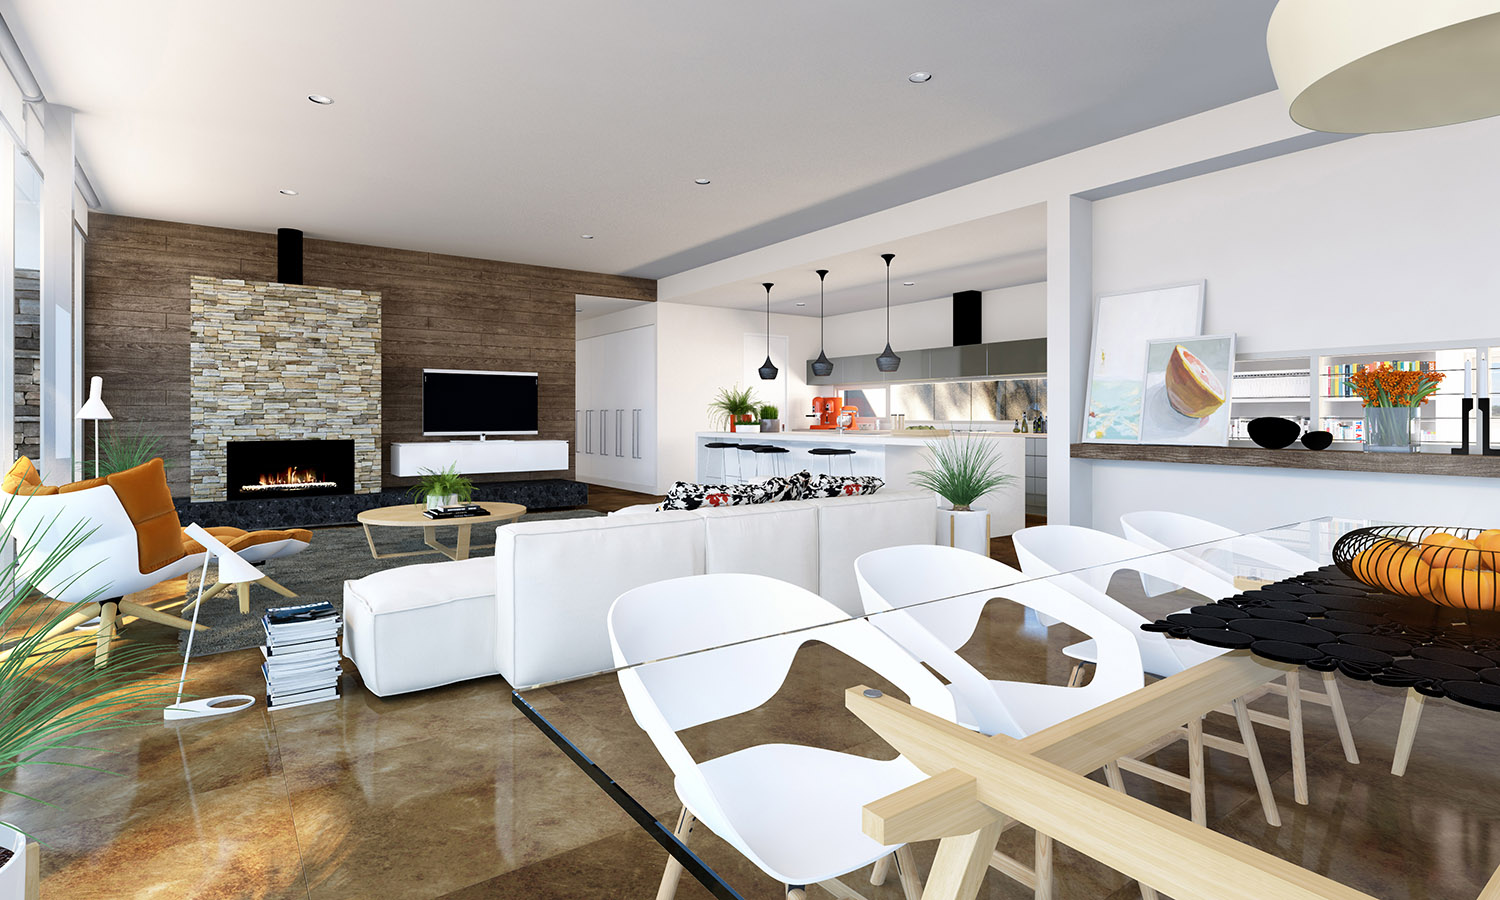 Wedo thiết kế nội thất sang trọng cho phòng khách, phòng ăn căn hộ cao cấp